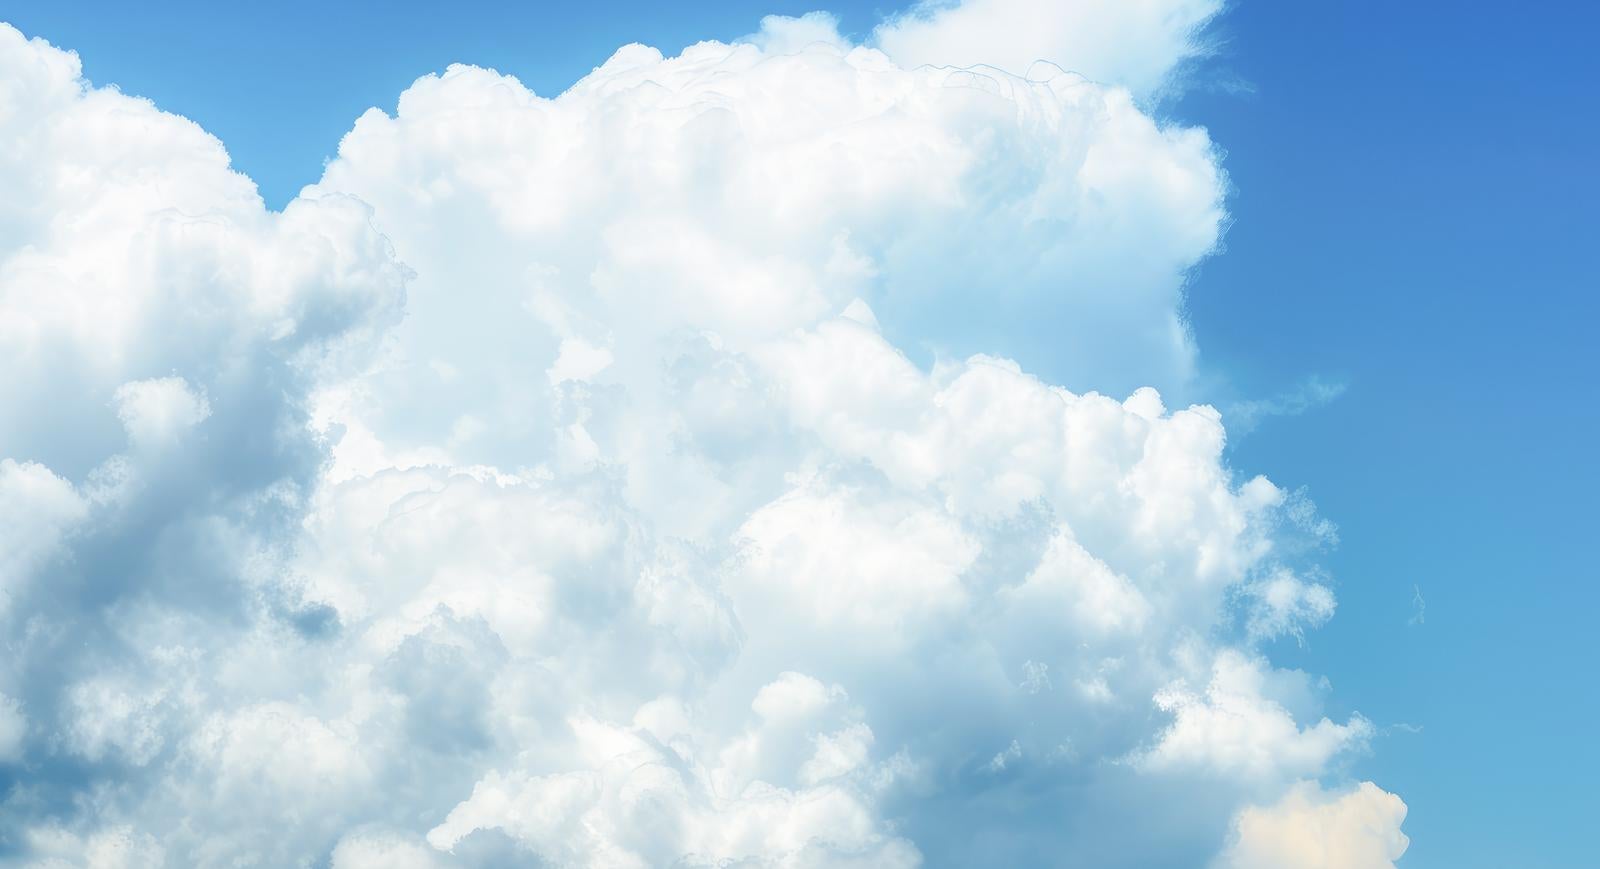 「もこもこする積乱雲」の写真